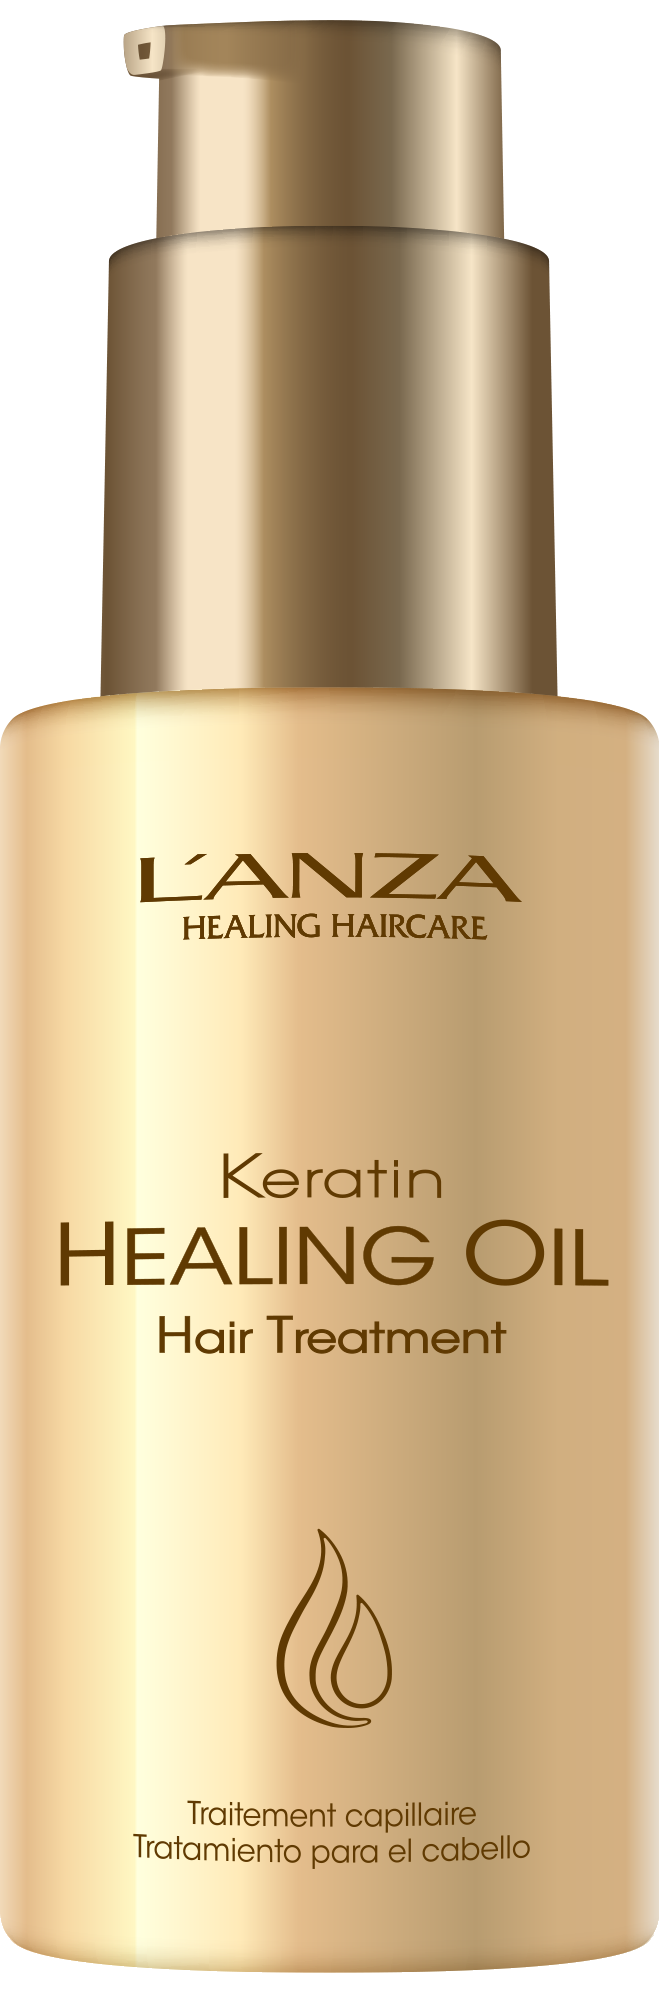 L'ANZA Healing Oil Treatment